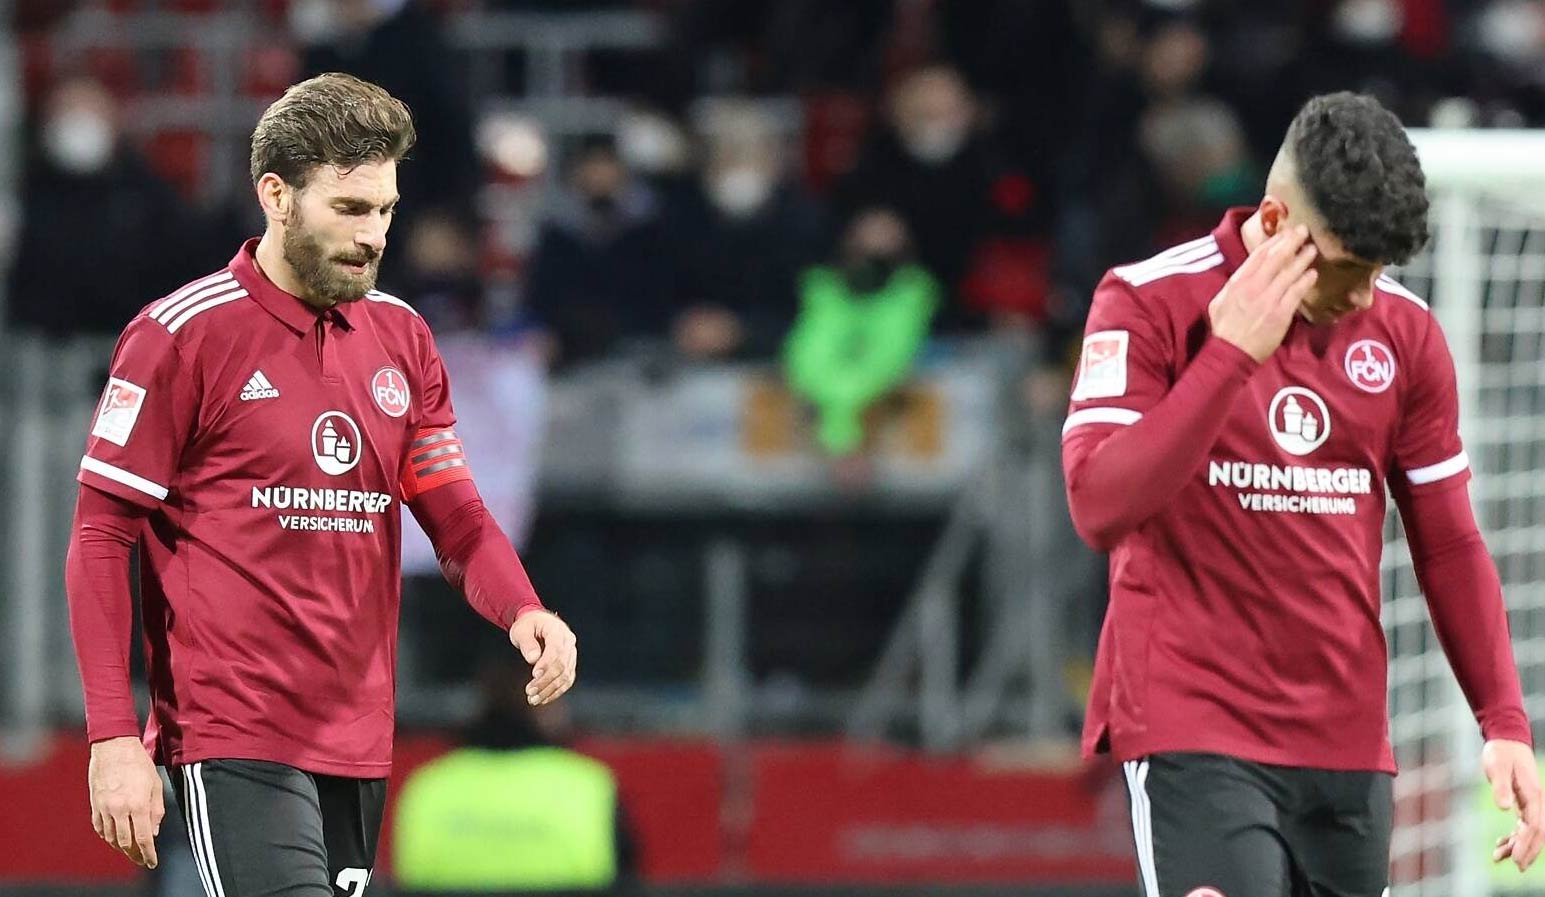 Der 1. FC Nürnberg hat im Aufstiegsrennen der 2. Bundesliga einen heftigen Rückschlag erlitten.